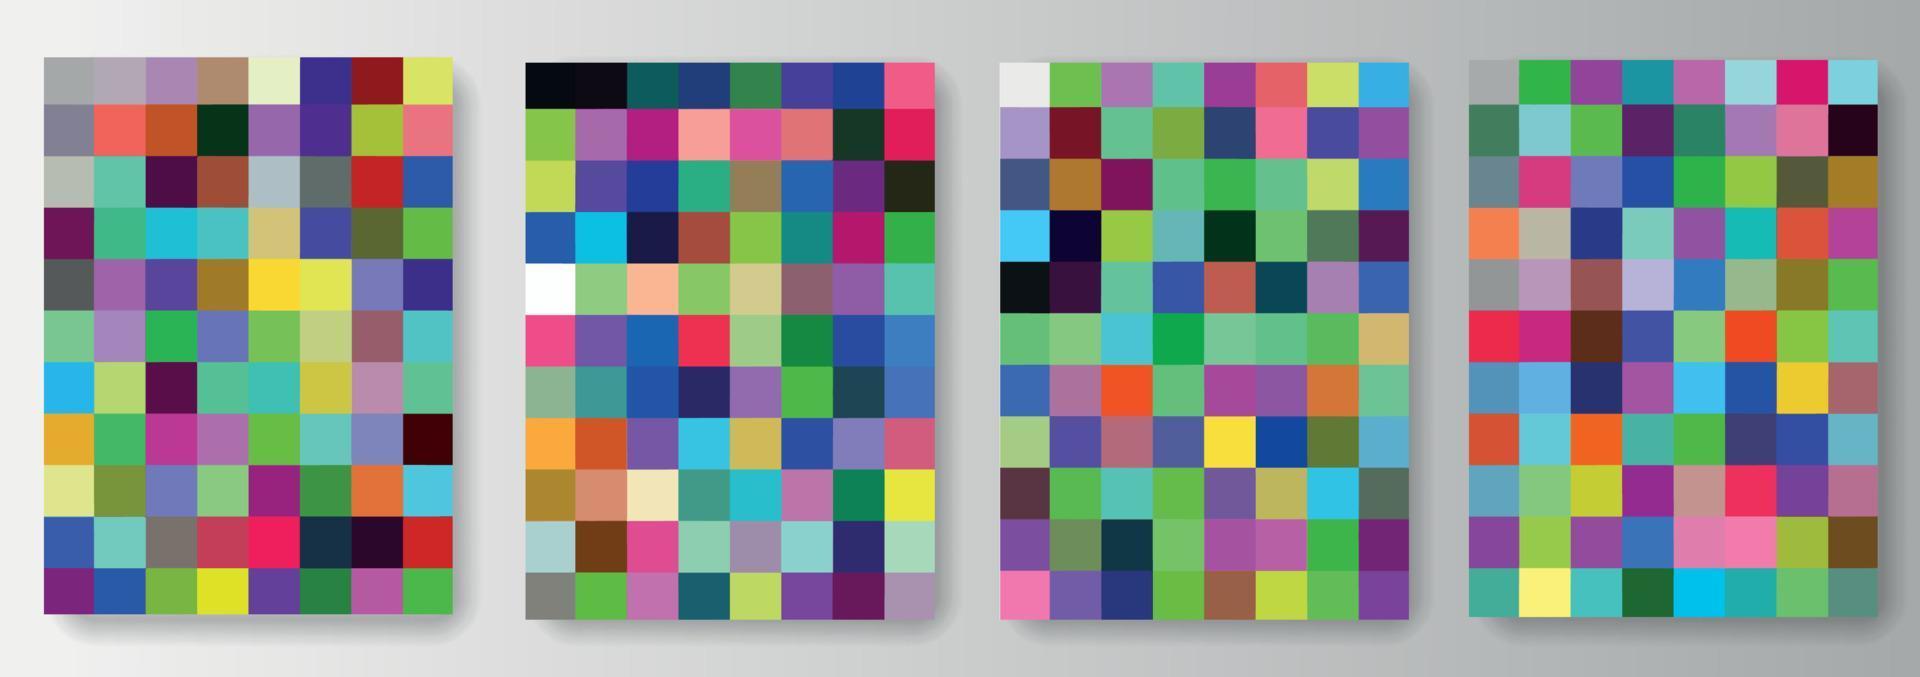 conjunto de colección de fondos de cuadrados de píxeles coloridos vector